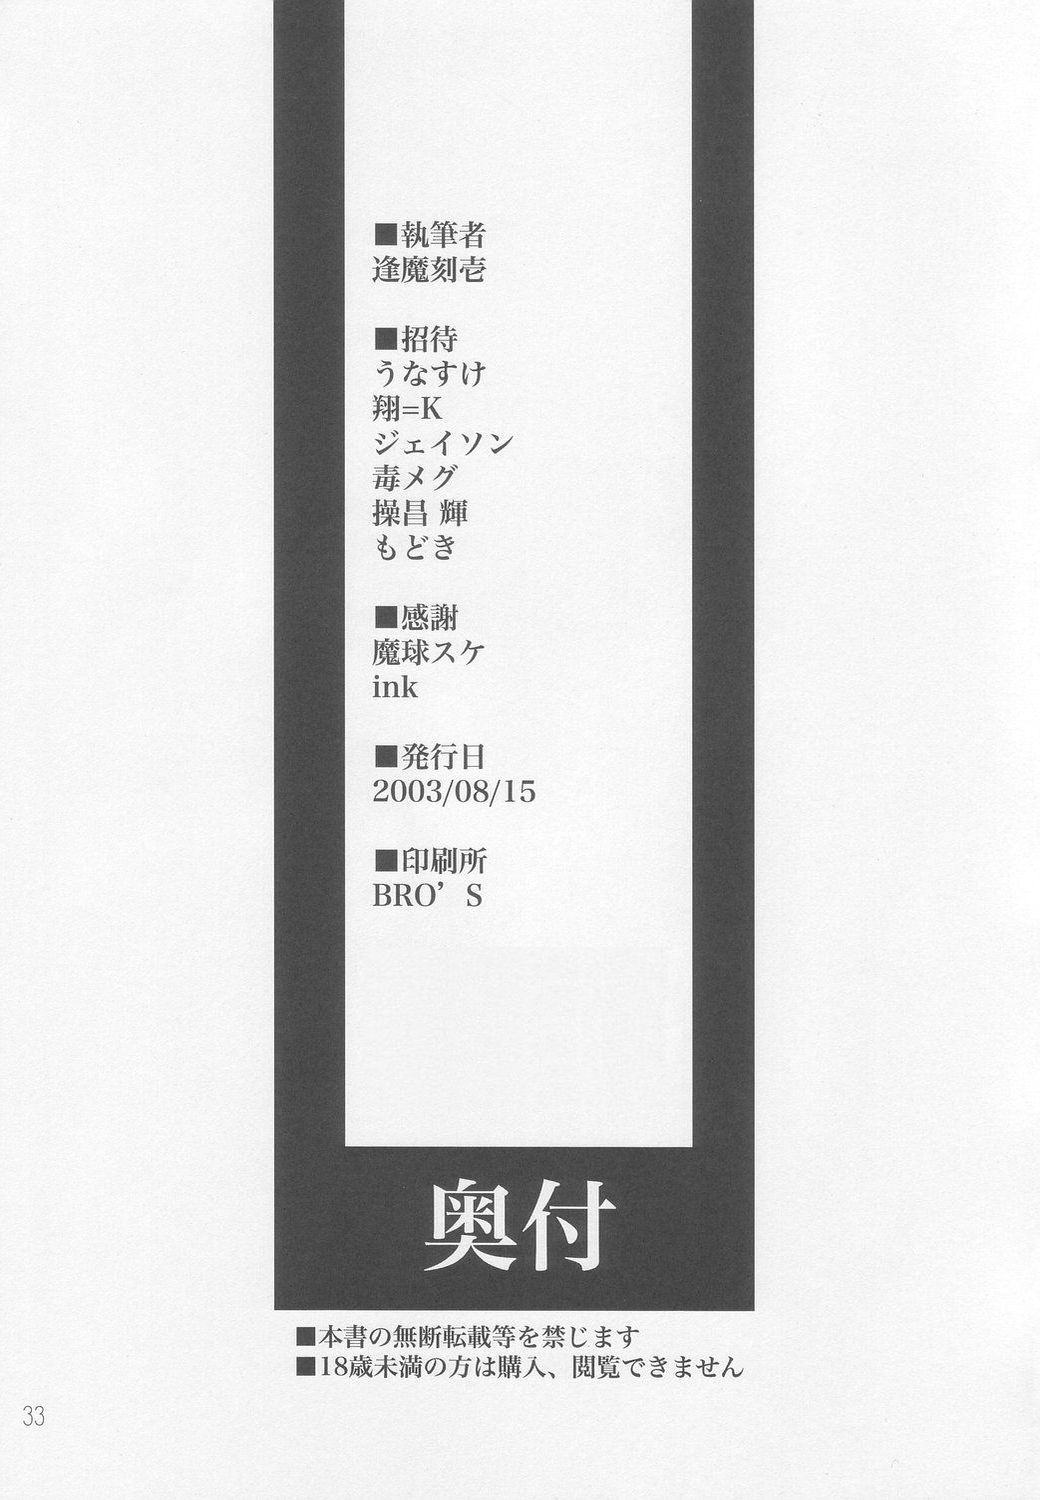 [Shimoyakedou (Various)] SEKI-SHI (Tsukihime) [しもやけ堂 (色々)] 赤紫 (月姫)